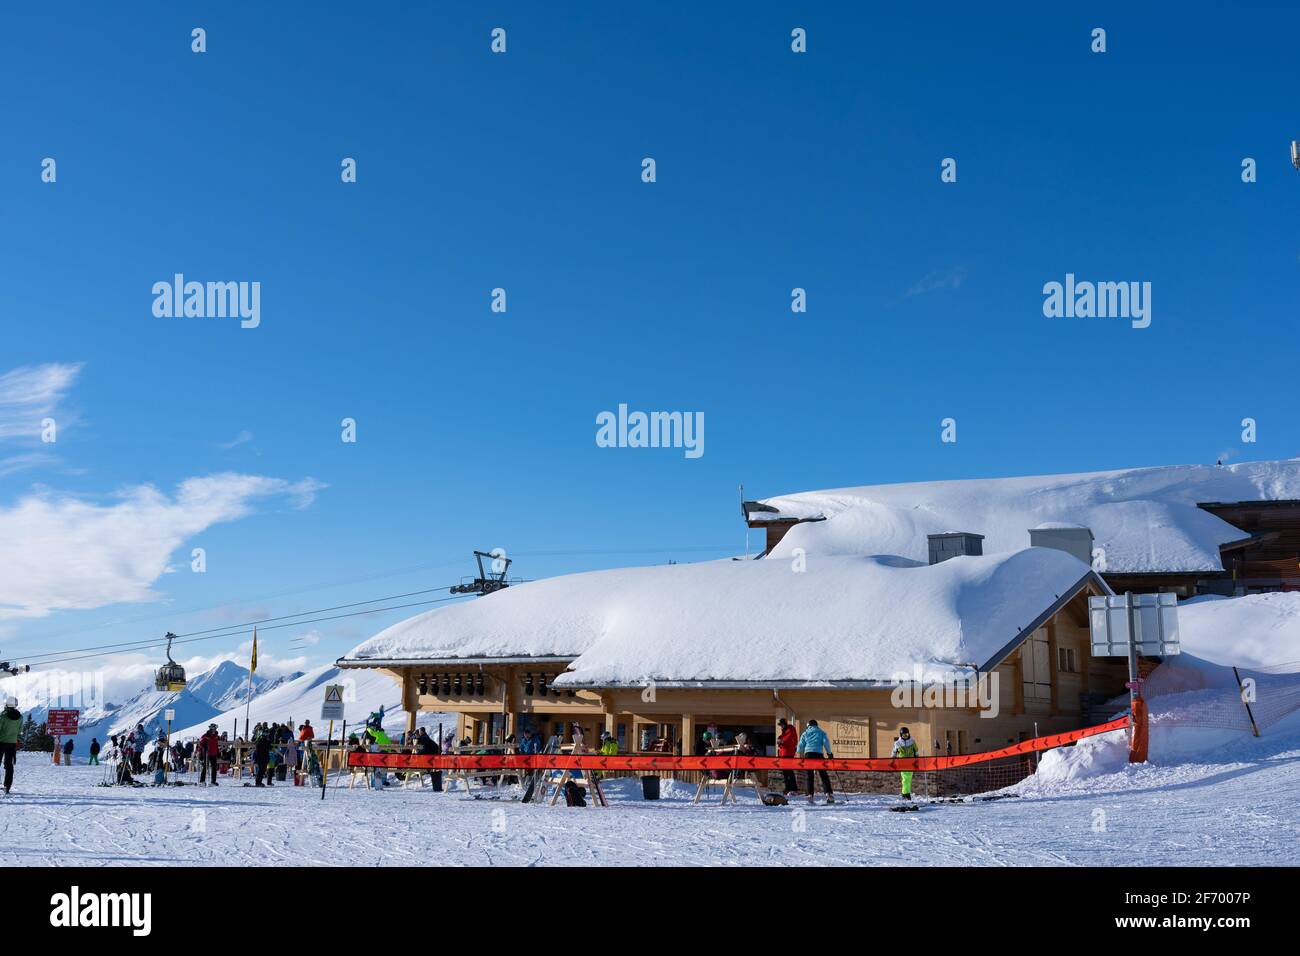 Wintersport-Enthusiasten im Restaurant Kaeserstatt auf dem Skigebiet Hasliberg Berner Oberland in der Schweiz ausruhen. Geschlossen im Innenbereich um 08 Uhr. Februar Stockfoto